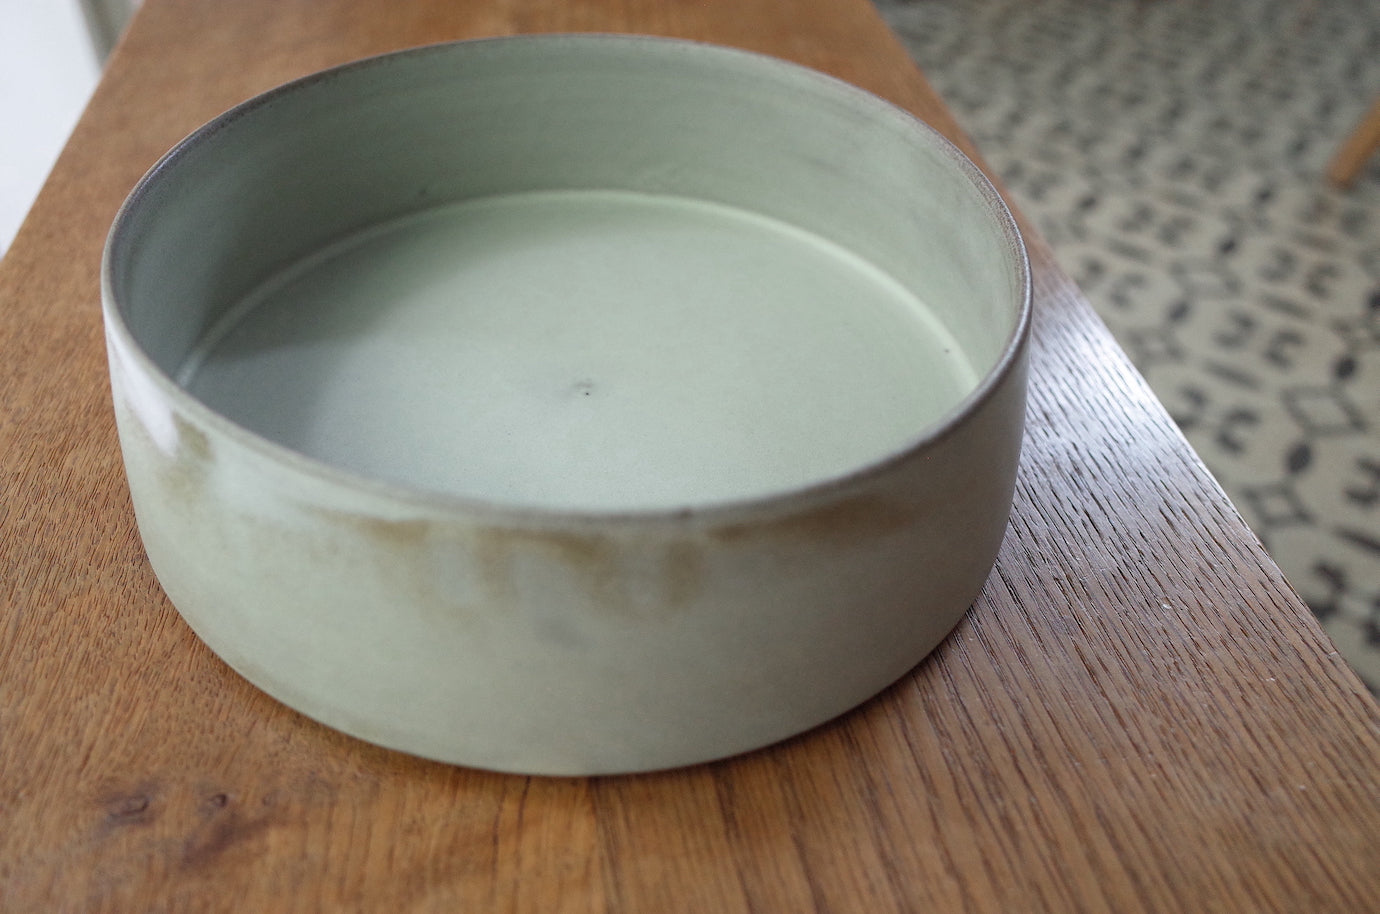 鉢, Old White, L